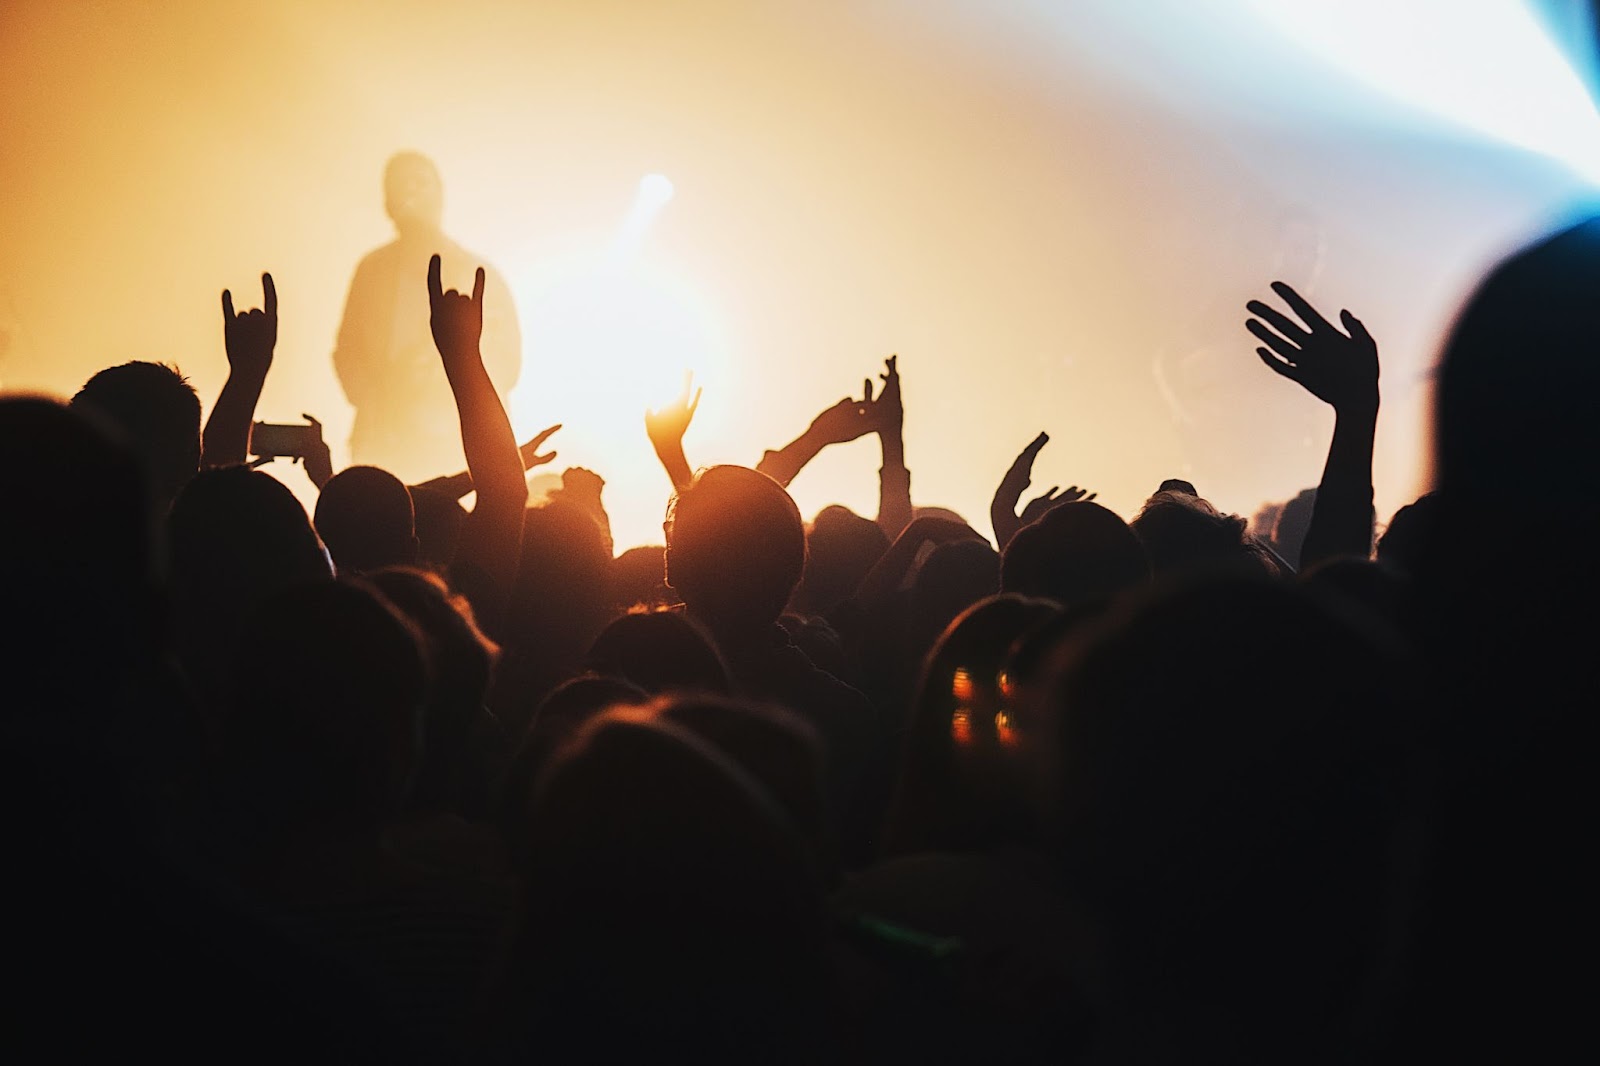 Silhueta de uma multidão em frente a um show de música. Ao fundo, aparece a silhueta de um homem que parece estar no palco.
